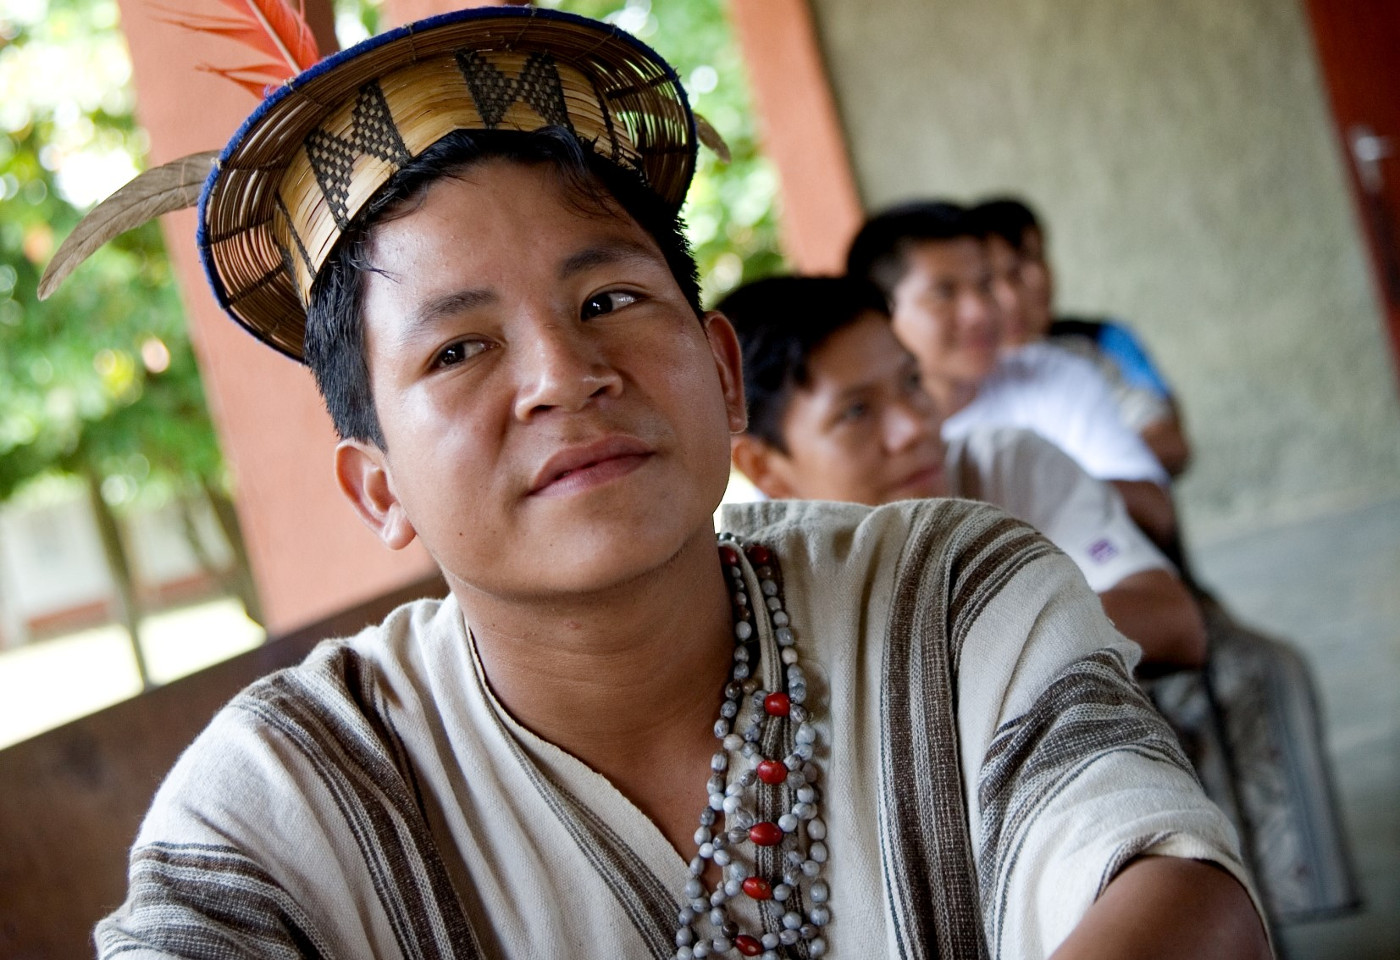 Traditionell gekleideter indigener Student vom Volk der Ashaninka, Peru. Foto: Adveniat/Martin Steffen